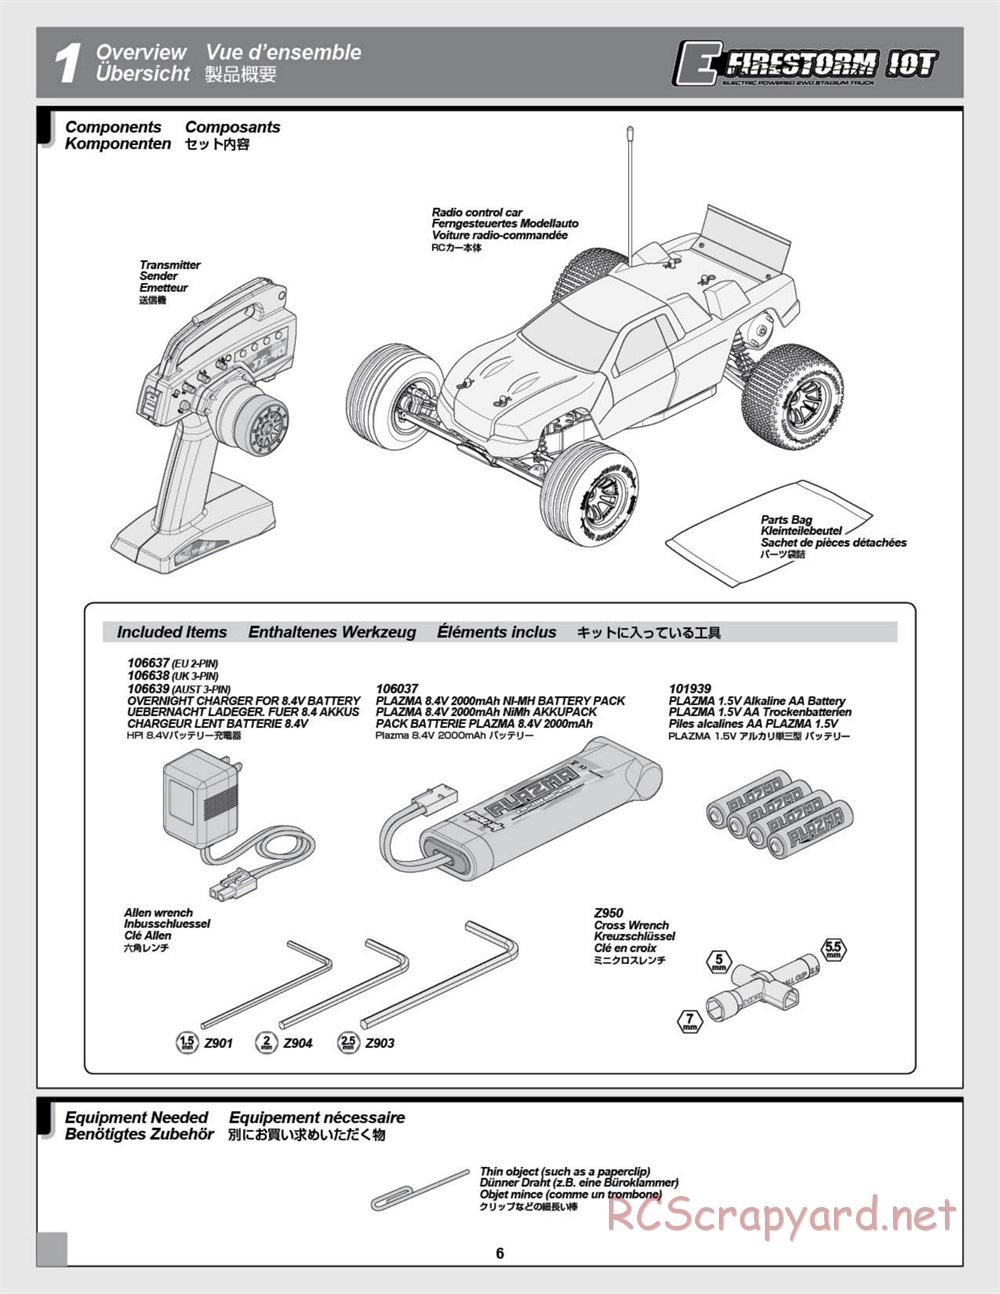 HPI - E-Firestorm-10T - Manual - Page 6